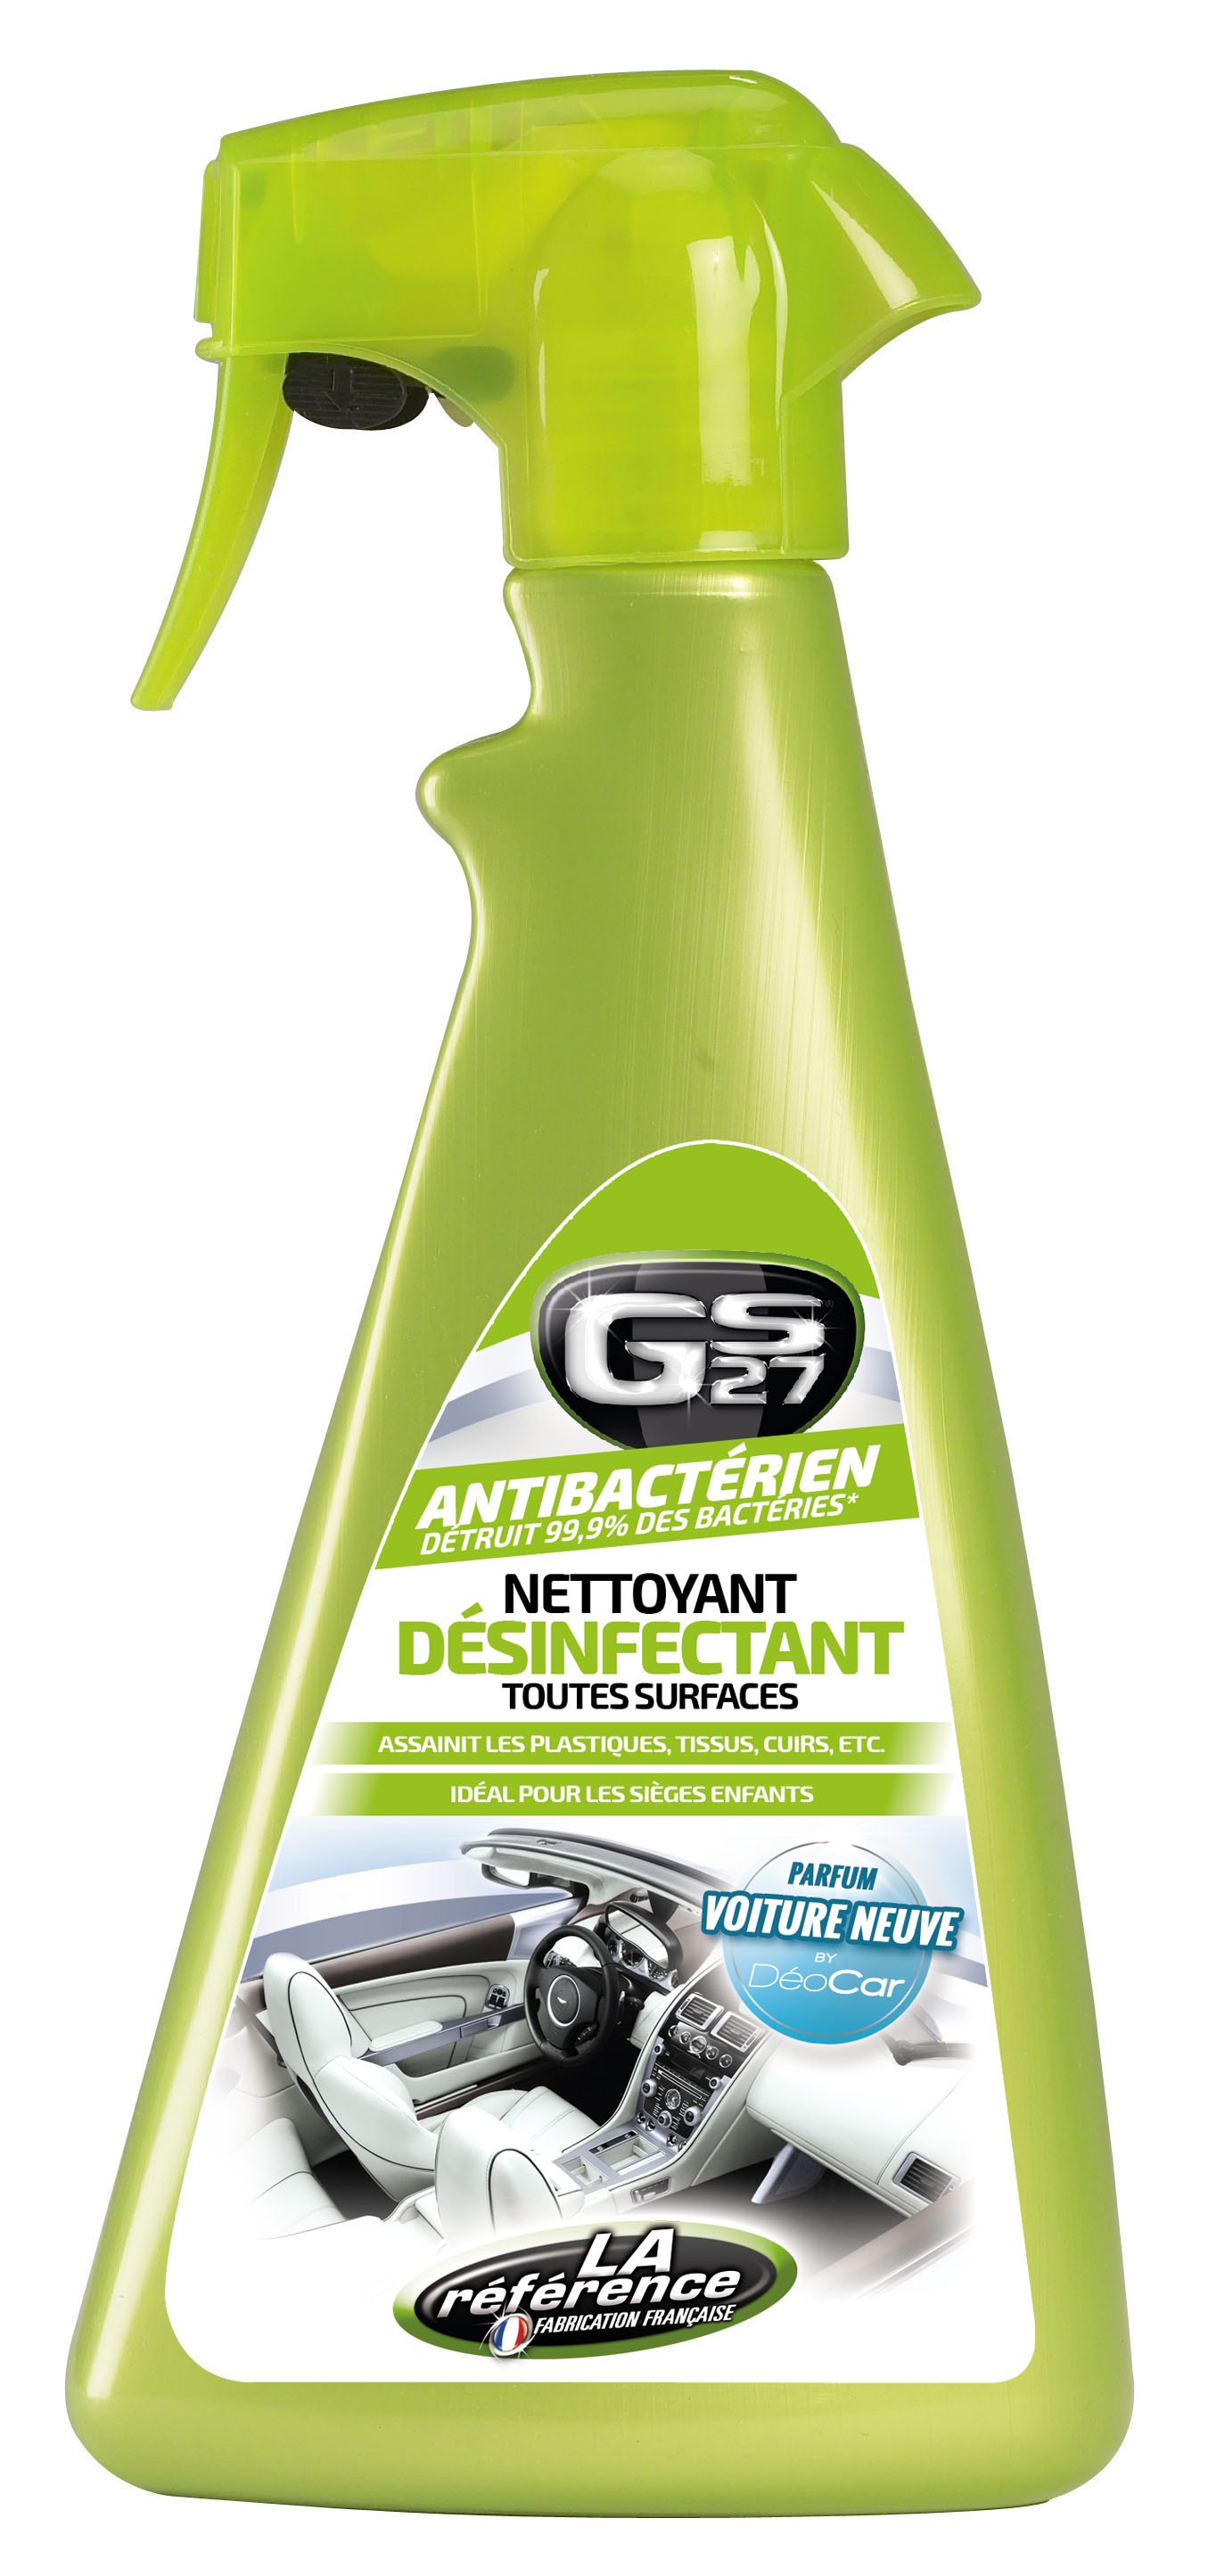 Coffret Nettoyant Désinfectant Climatisation Monoi GS27 150ml